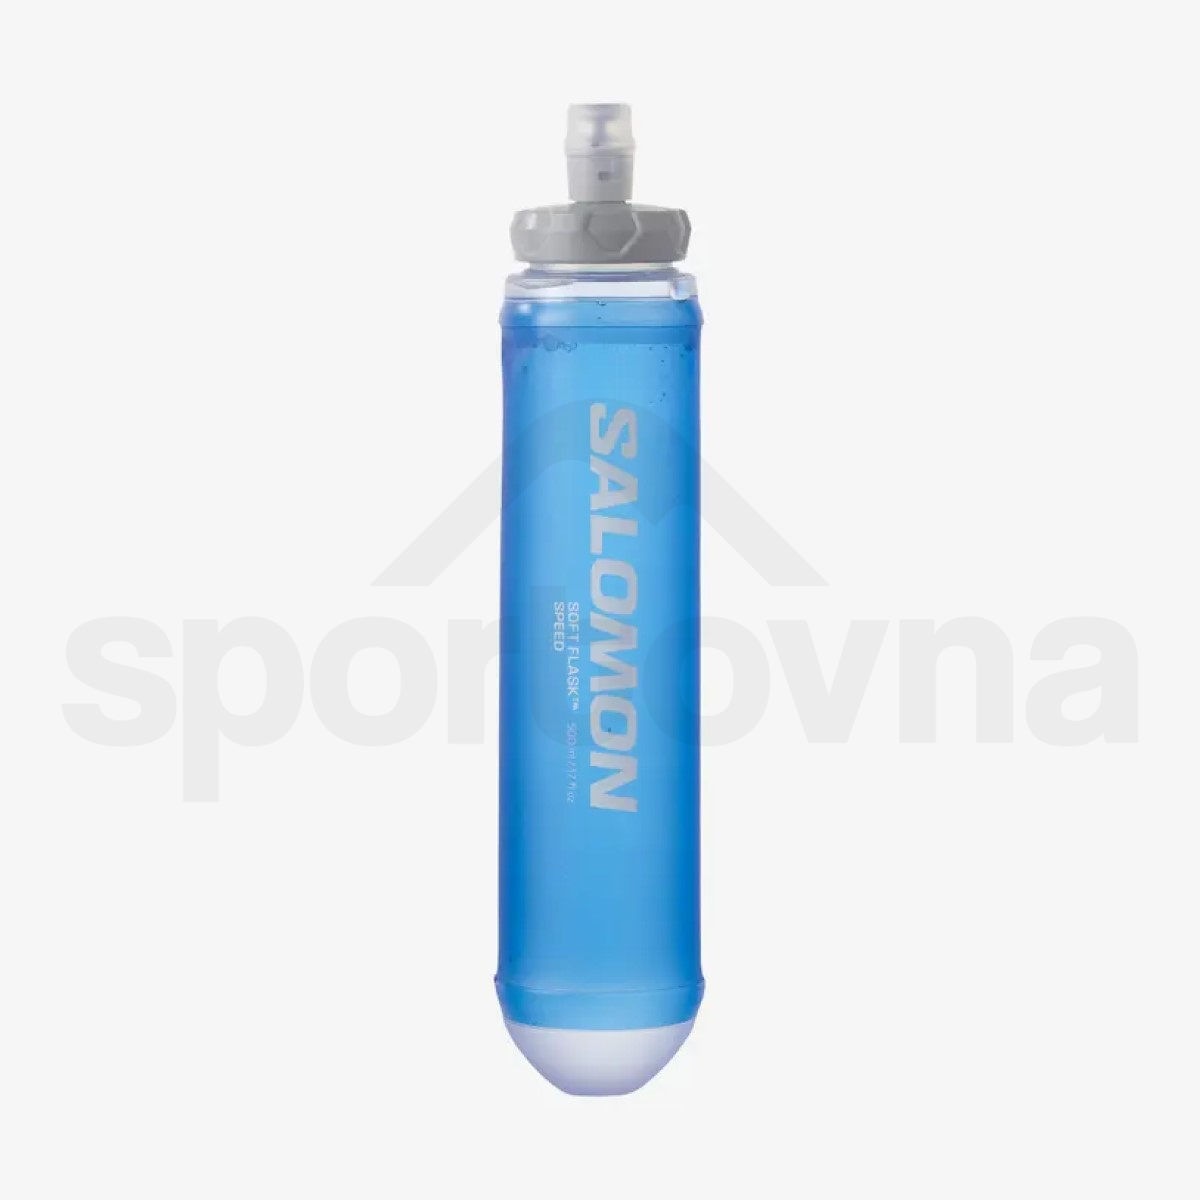 Batoh Salomon Sense Pro 2 with flasks - černá